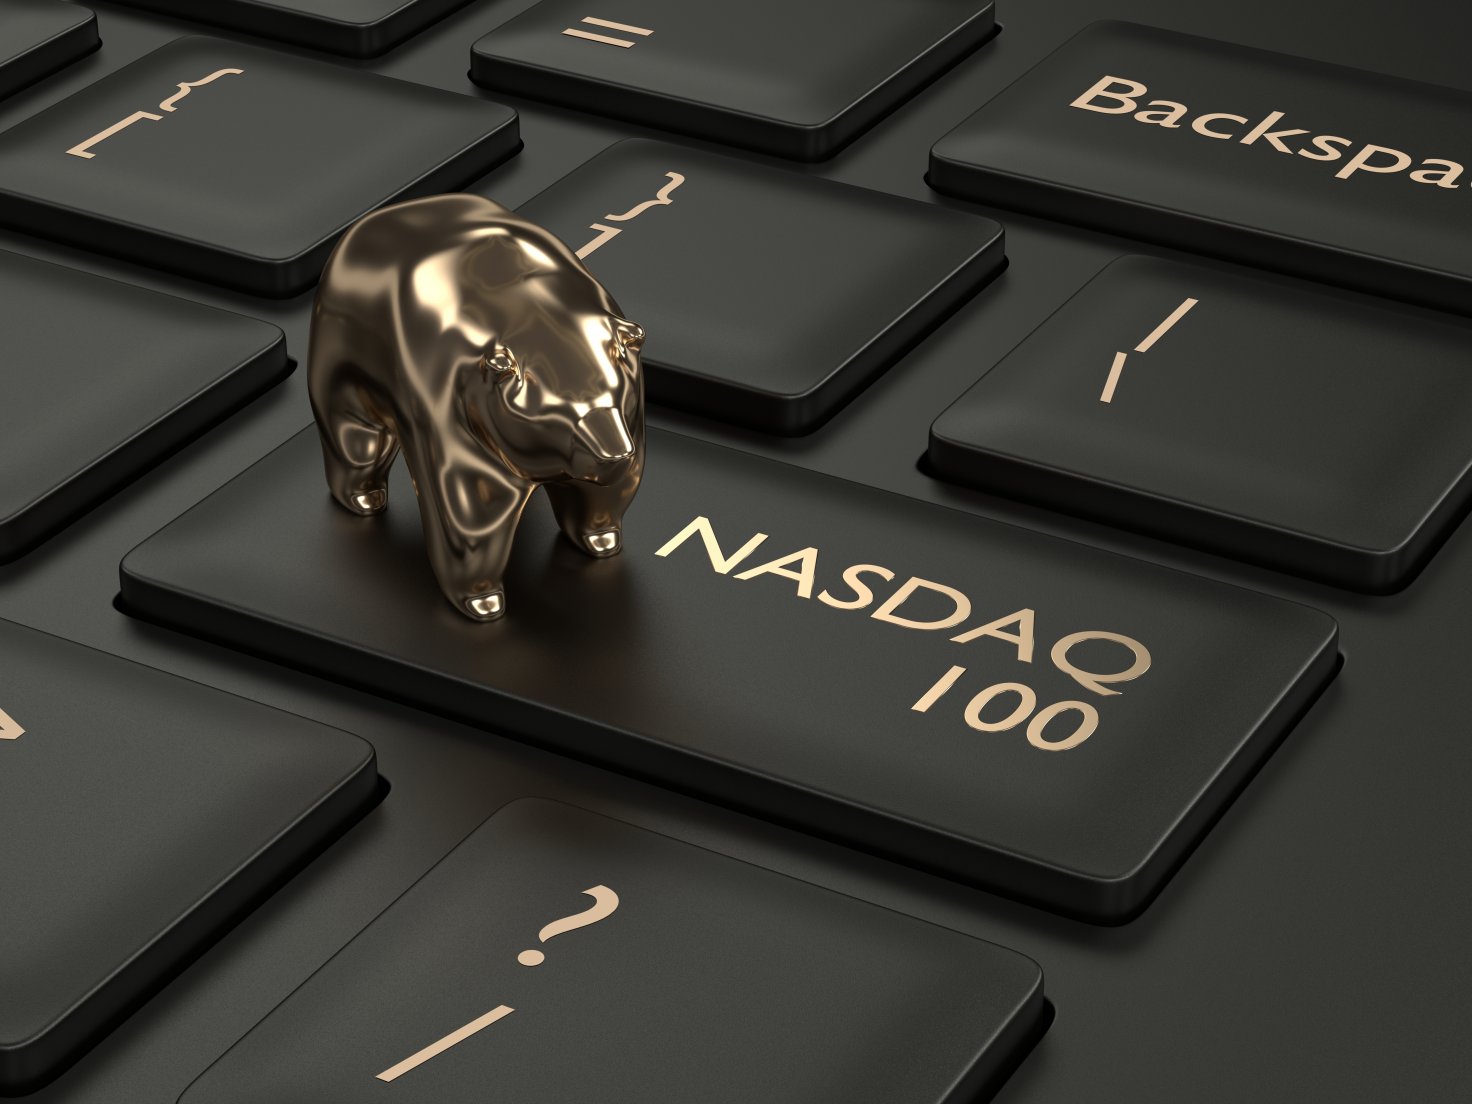 NASDAQ-100 Index, som ofta är känt helt enkelt som NASDAQ, är ett av världens mest kända riktmärken. Indexet använder en modifierad marknadsstrategi som återspeglar resultatet av en tekniskt tung korg med stora lager som kan skilja sig dramatiskt från index som Dow och S & P 500. NASDAQ-100 är också den underliggande för en av de äldsta och mest populära ETF